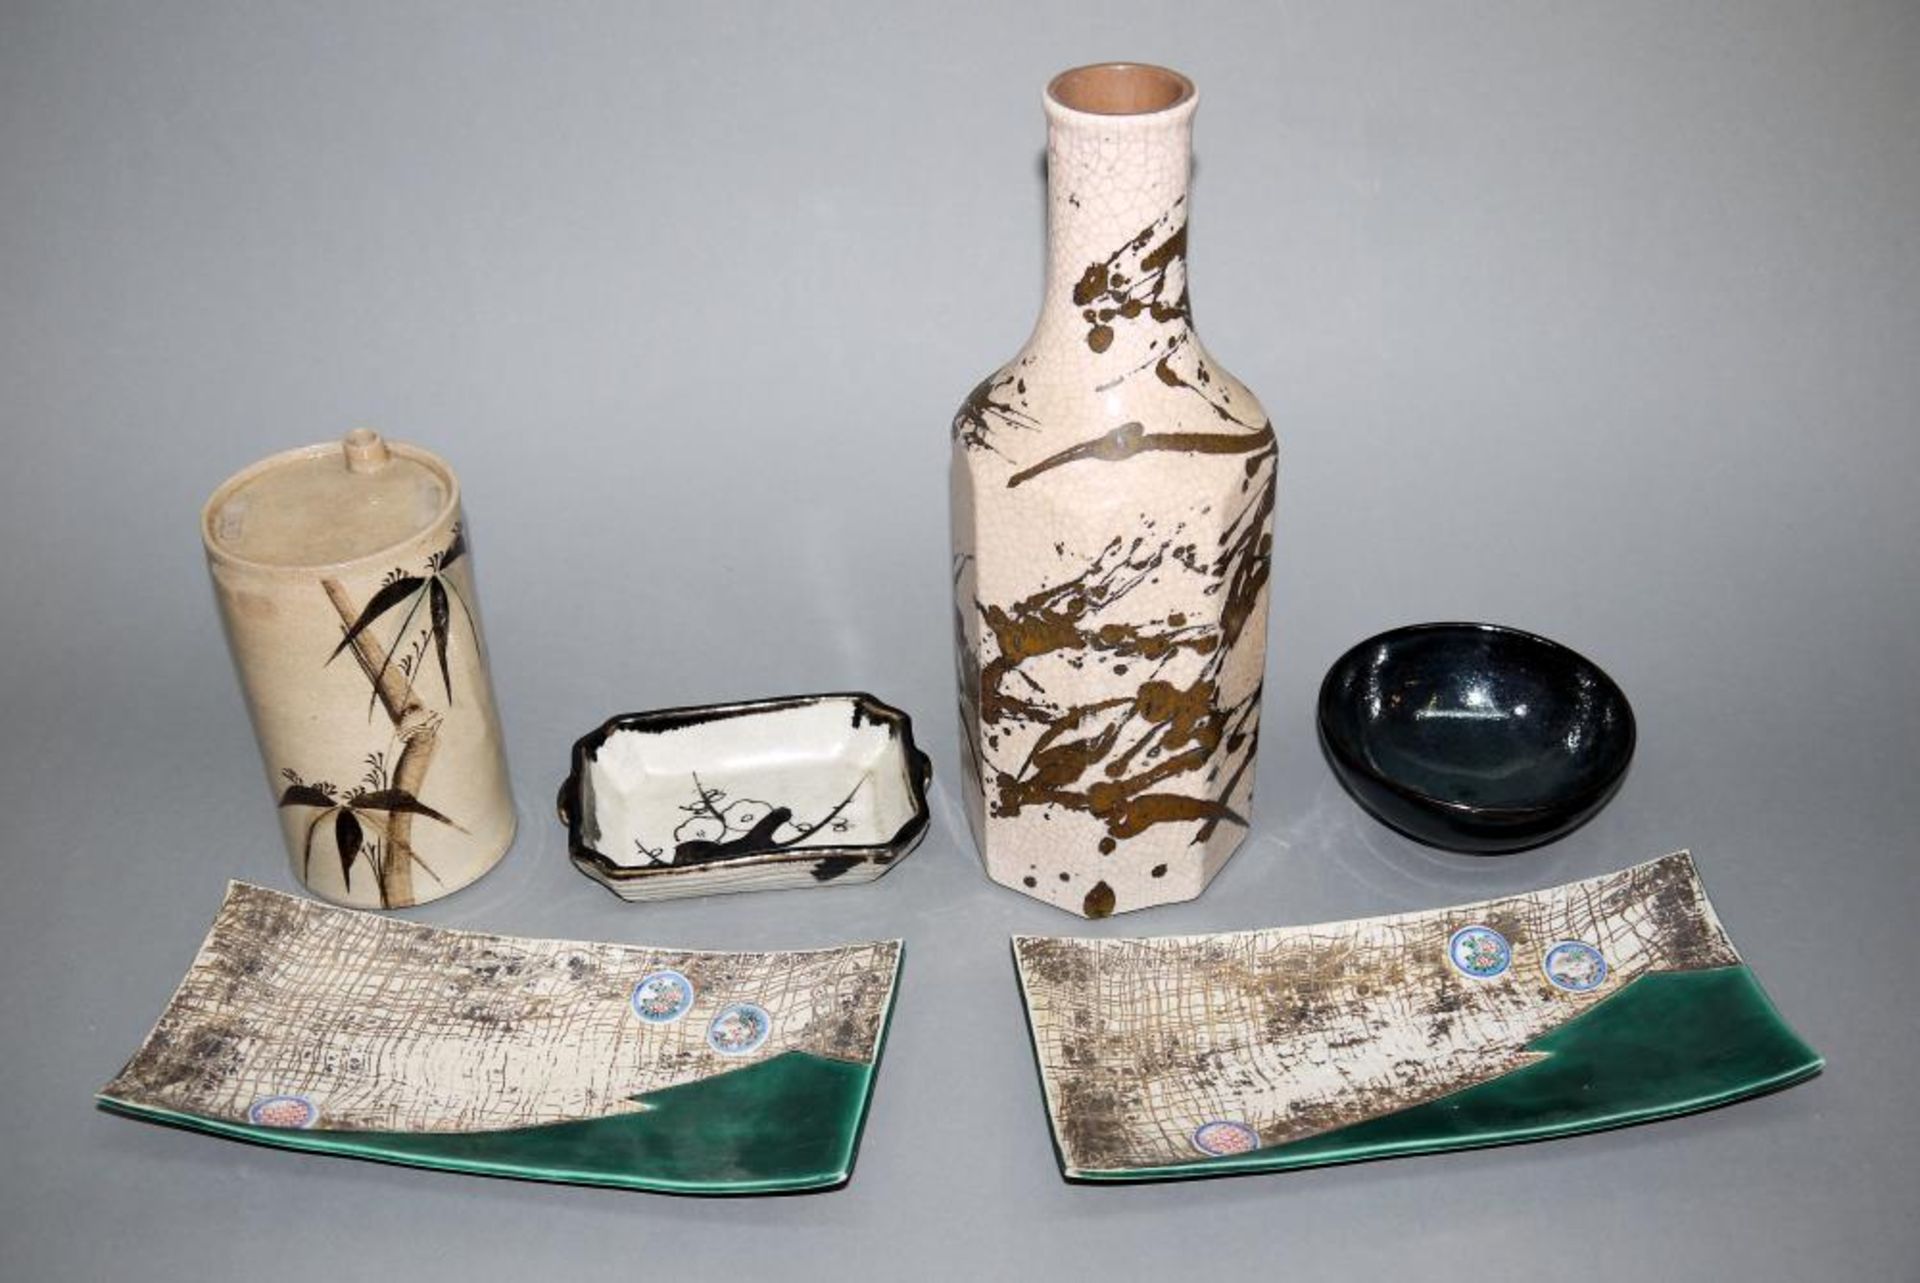 Sechs japanische Künstler-Keramiken als Gebrauchsgeschirr, 19./20. Jh. Zwei Sake-Flaschen, einmal im